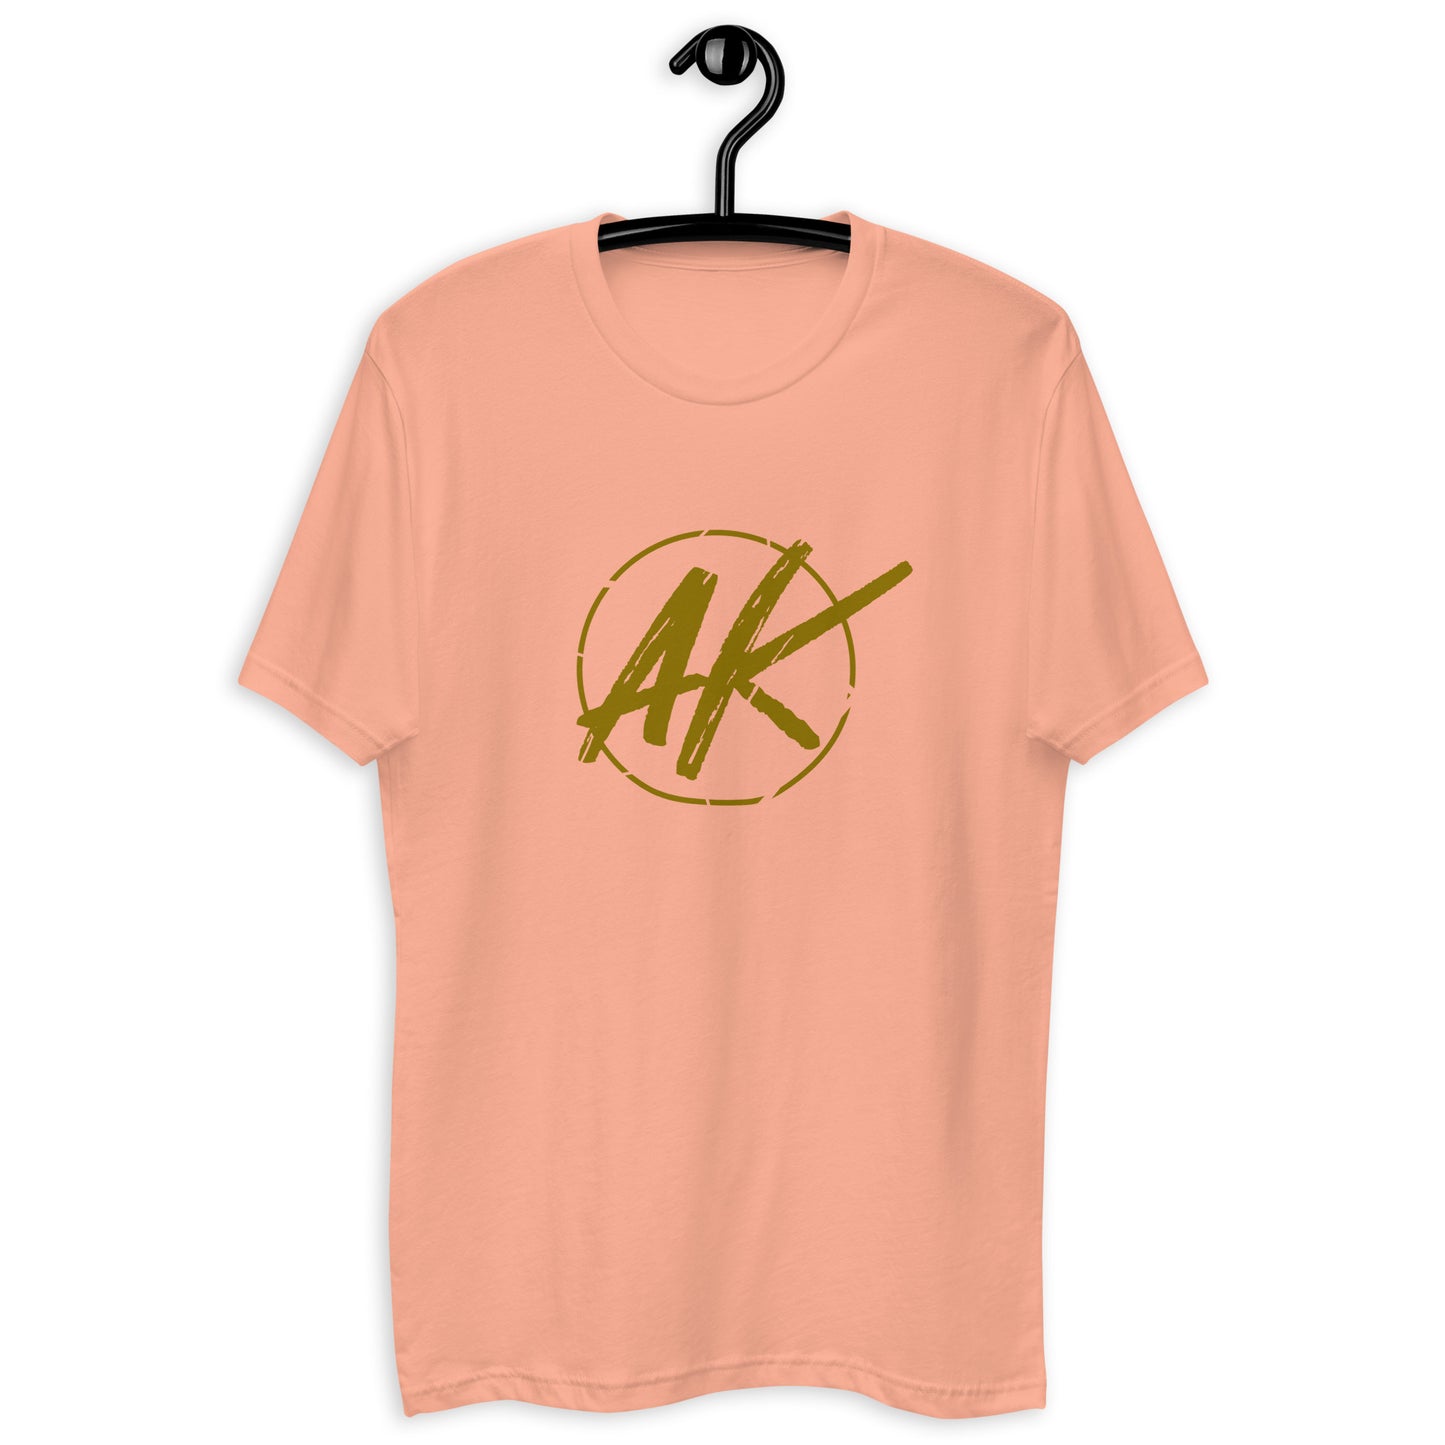 M| AK (gold)